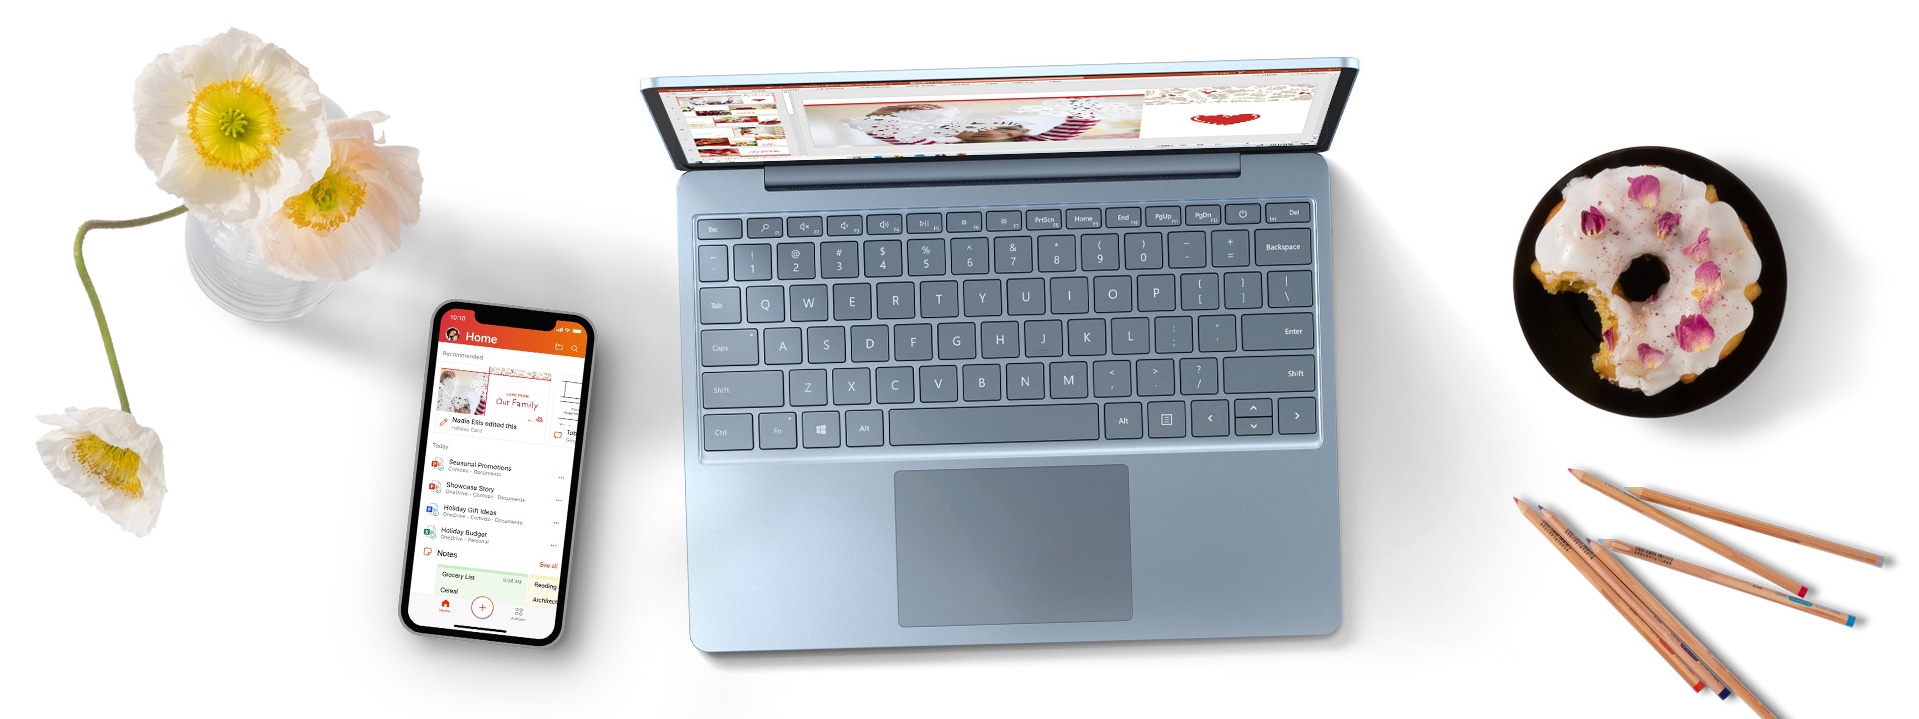 Surface Laptop Go sur un bureau avec un téléphone portable, des fleurs et un beignet sur une assiette